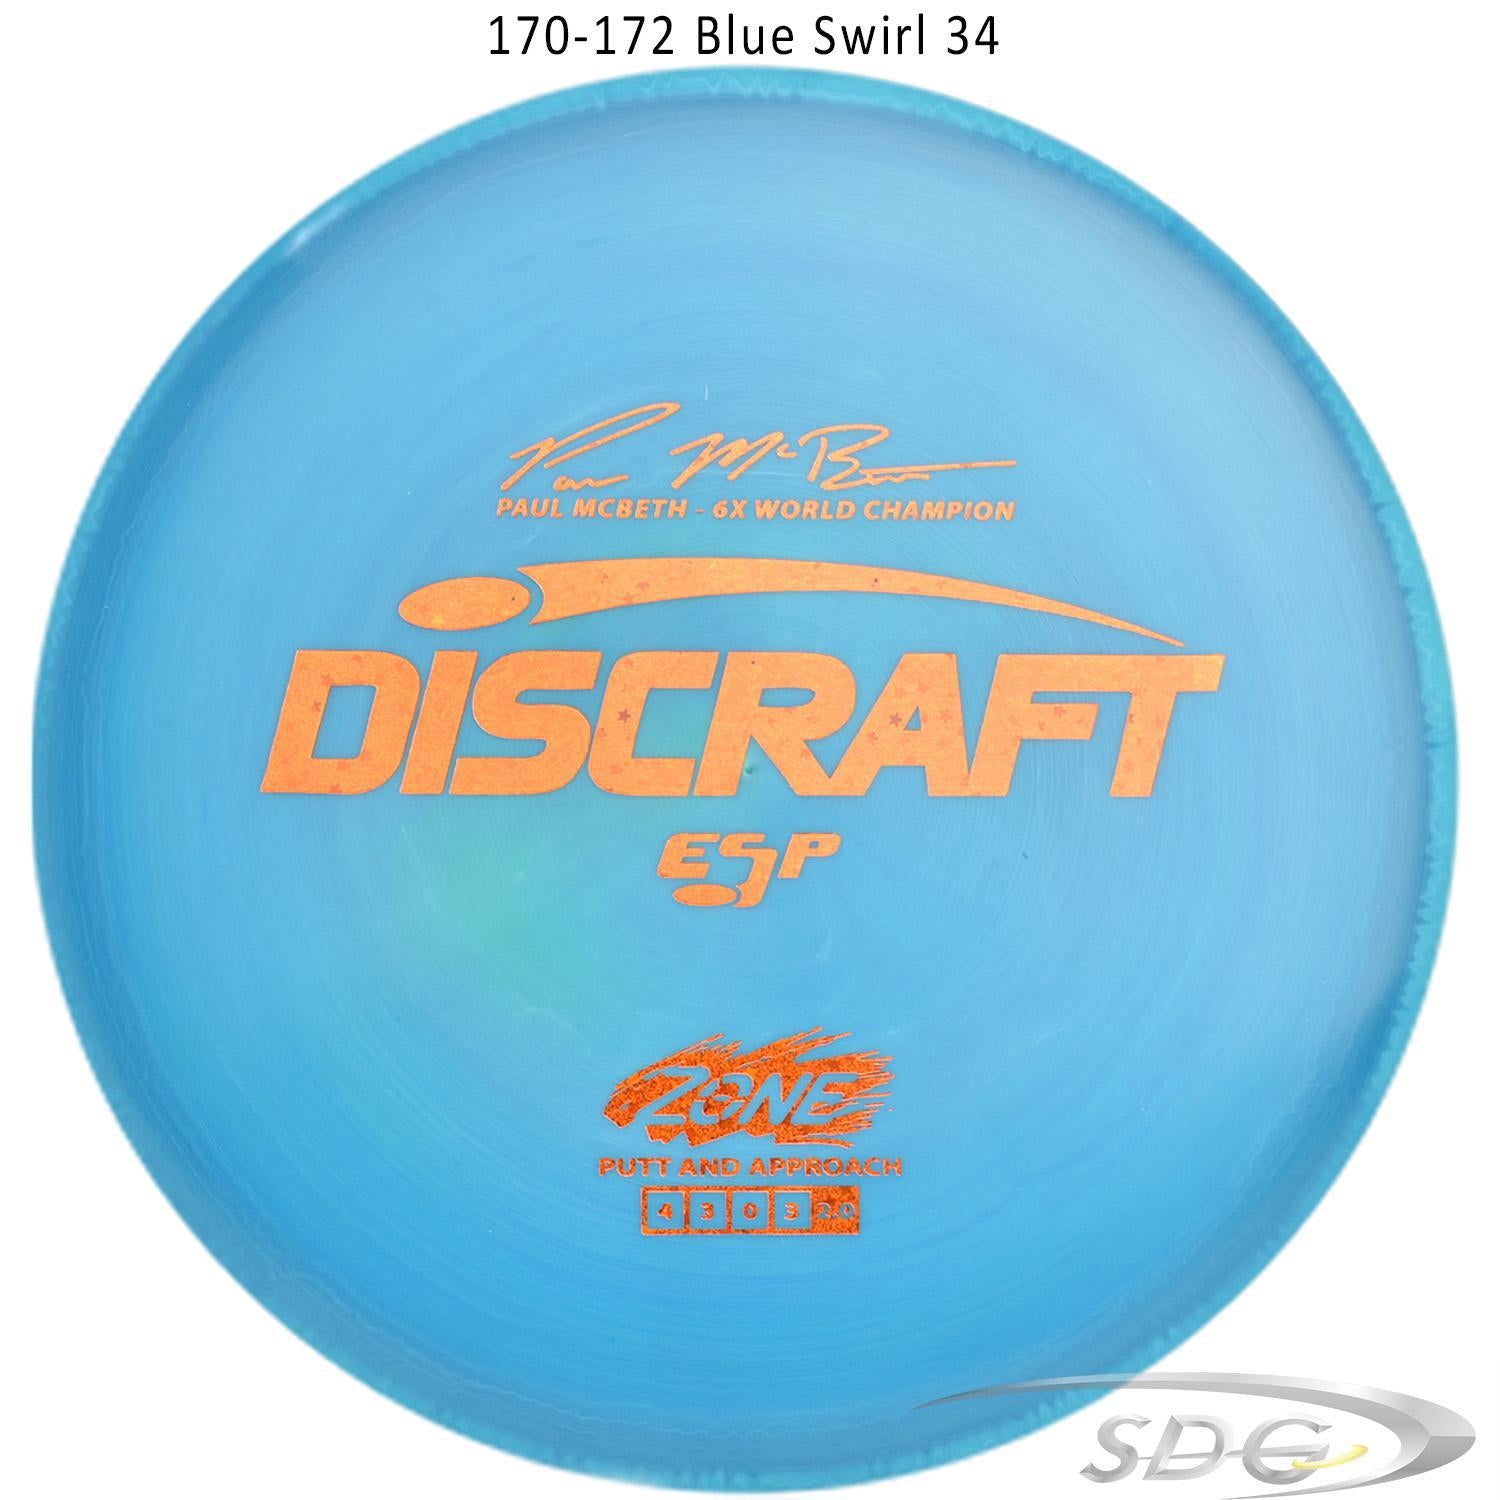 discraft-esp-zone-6x-paul-mcbeth-signature-series-disc-golf-putter-172-170-weights 170-172  Blue Swirl 34 